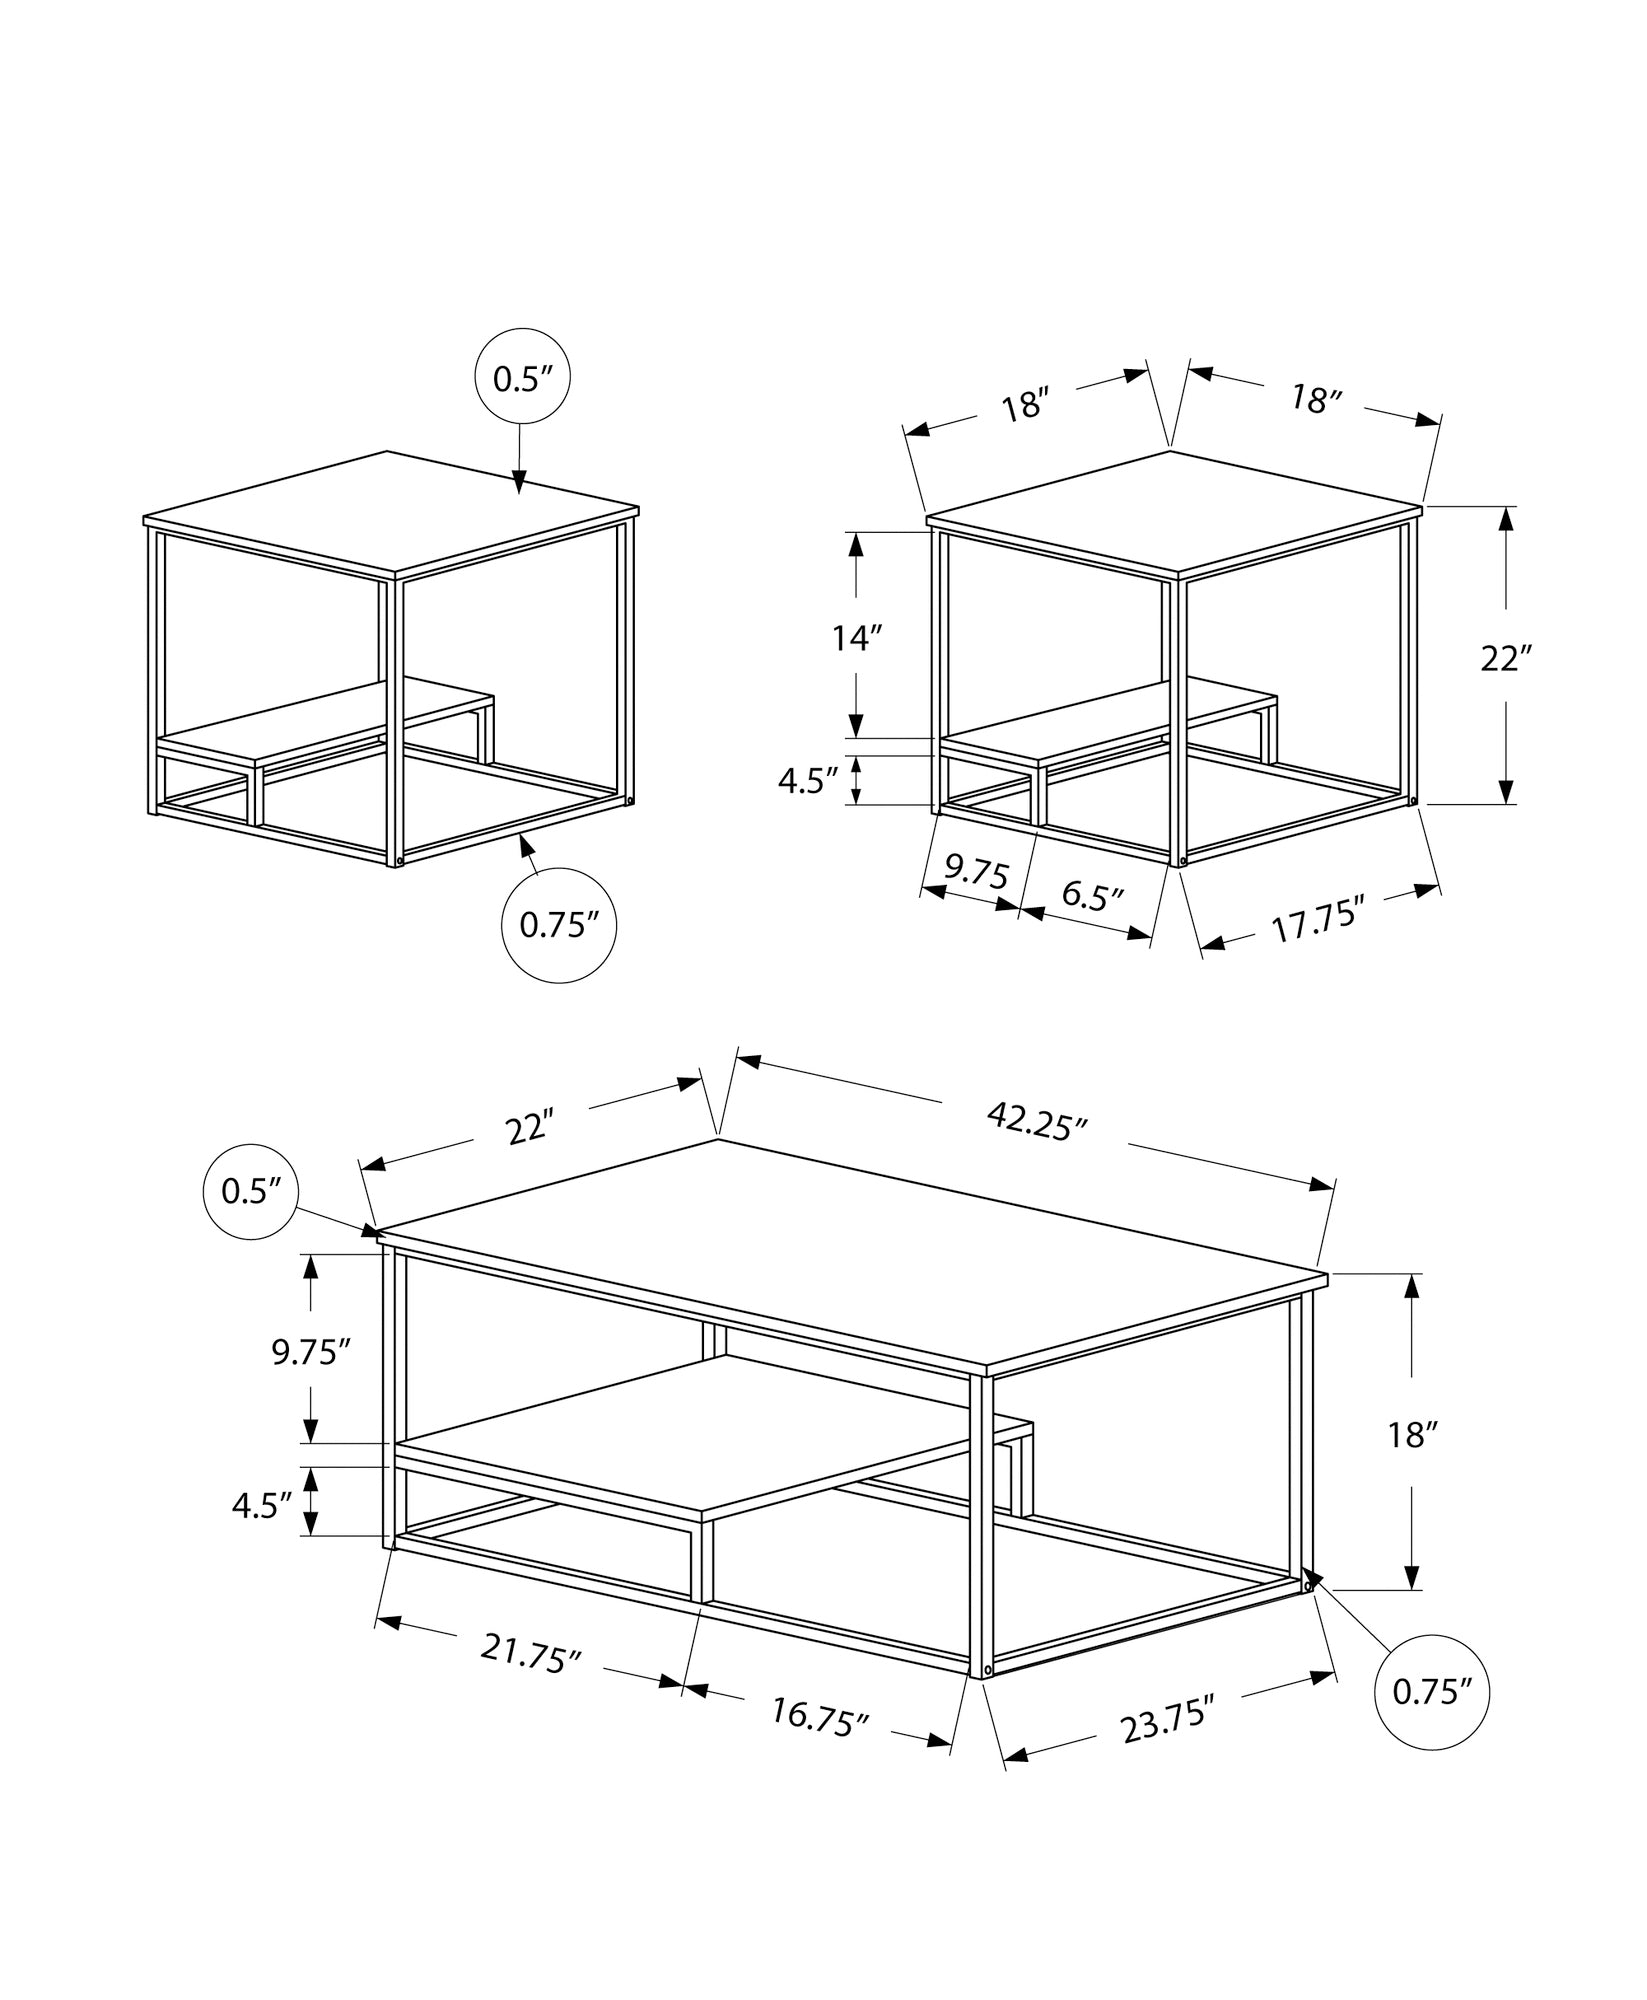 Table Set - 3Pcs Set / Black Marble / Black Metal